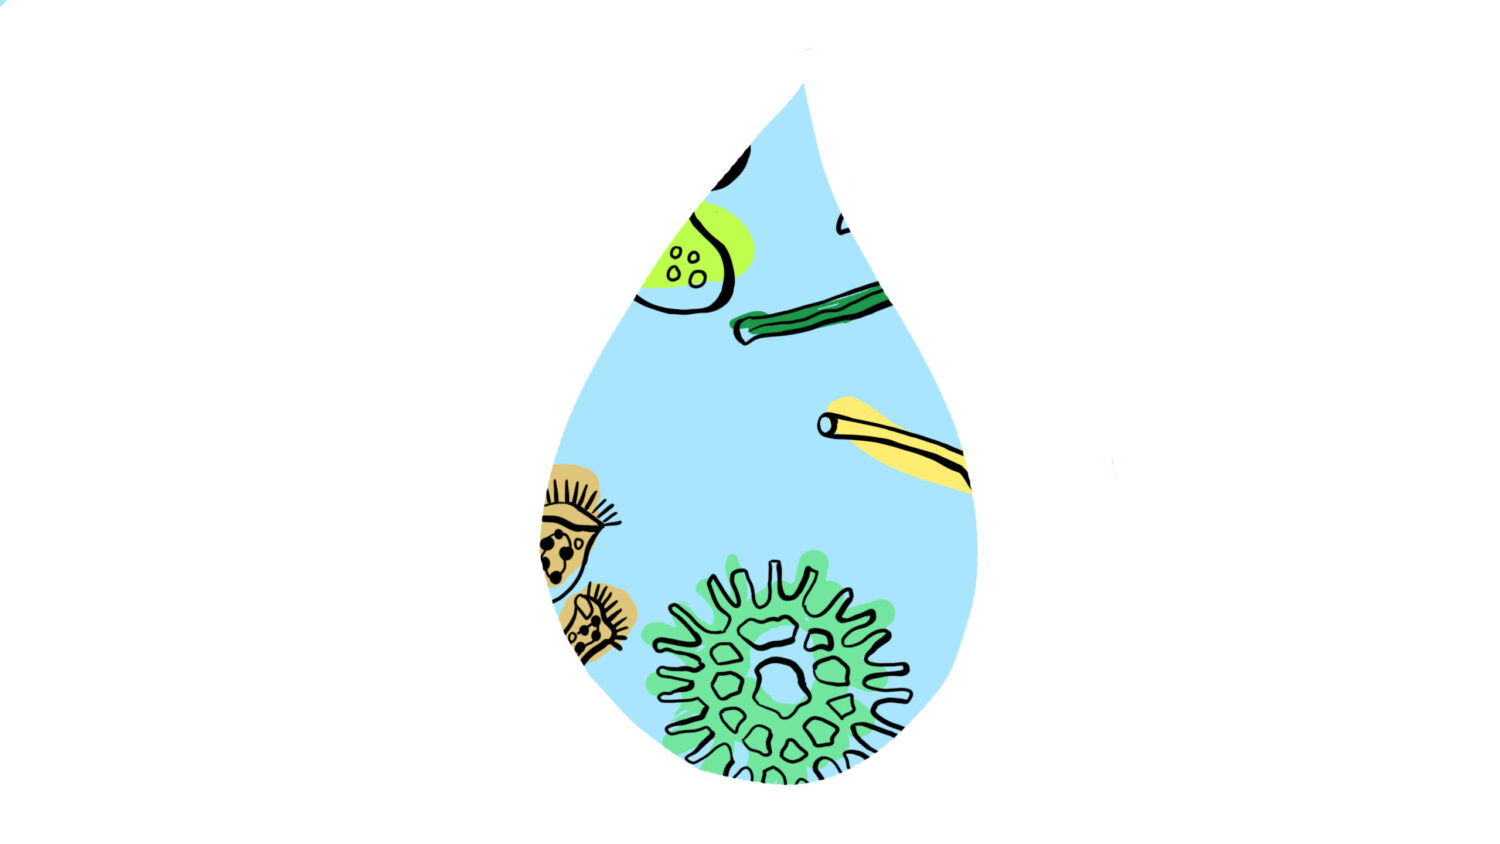 Short illustrated animation - the life in a drop of water. 
Krótka, ilustrowana animacja - życie w kropli wody.